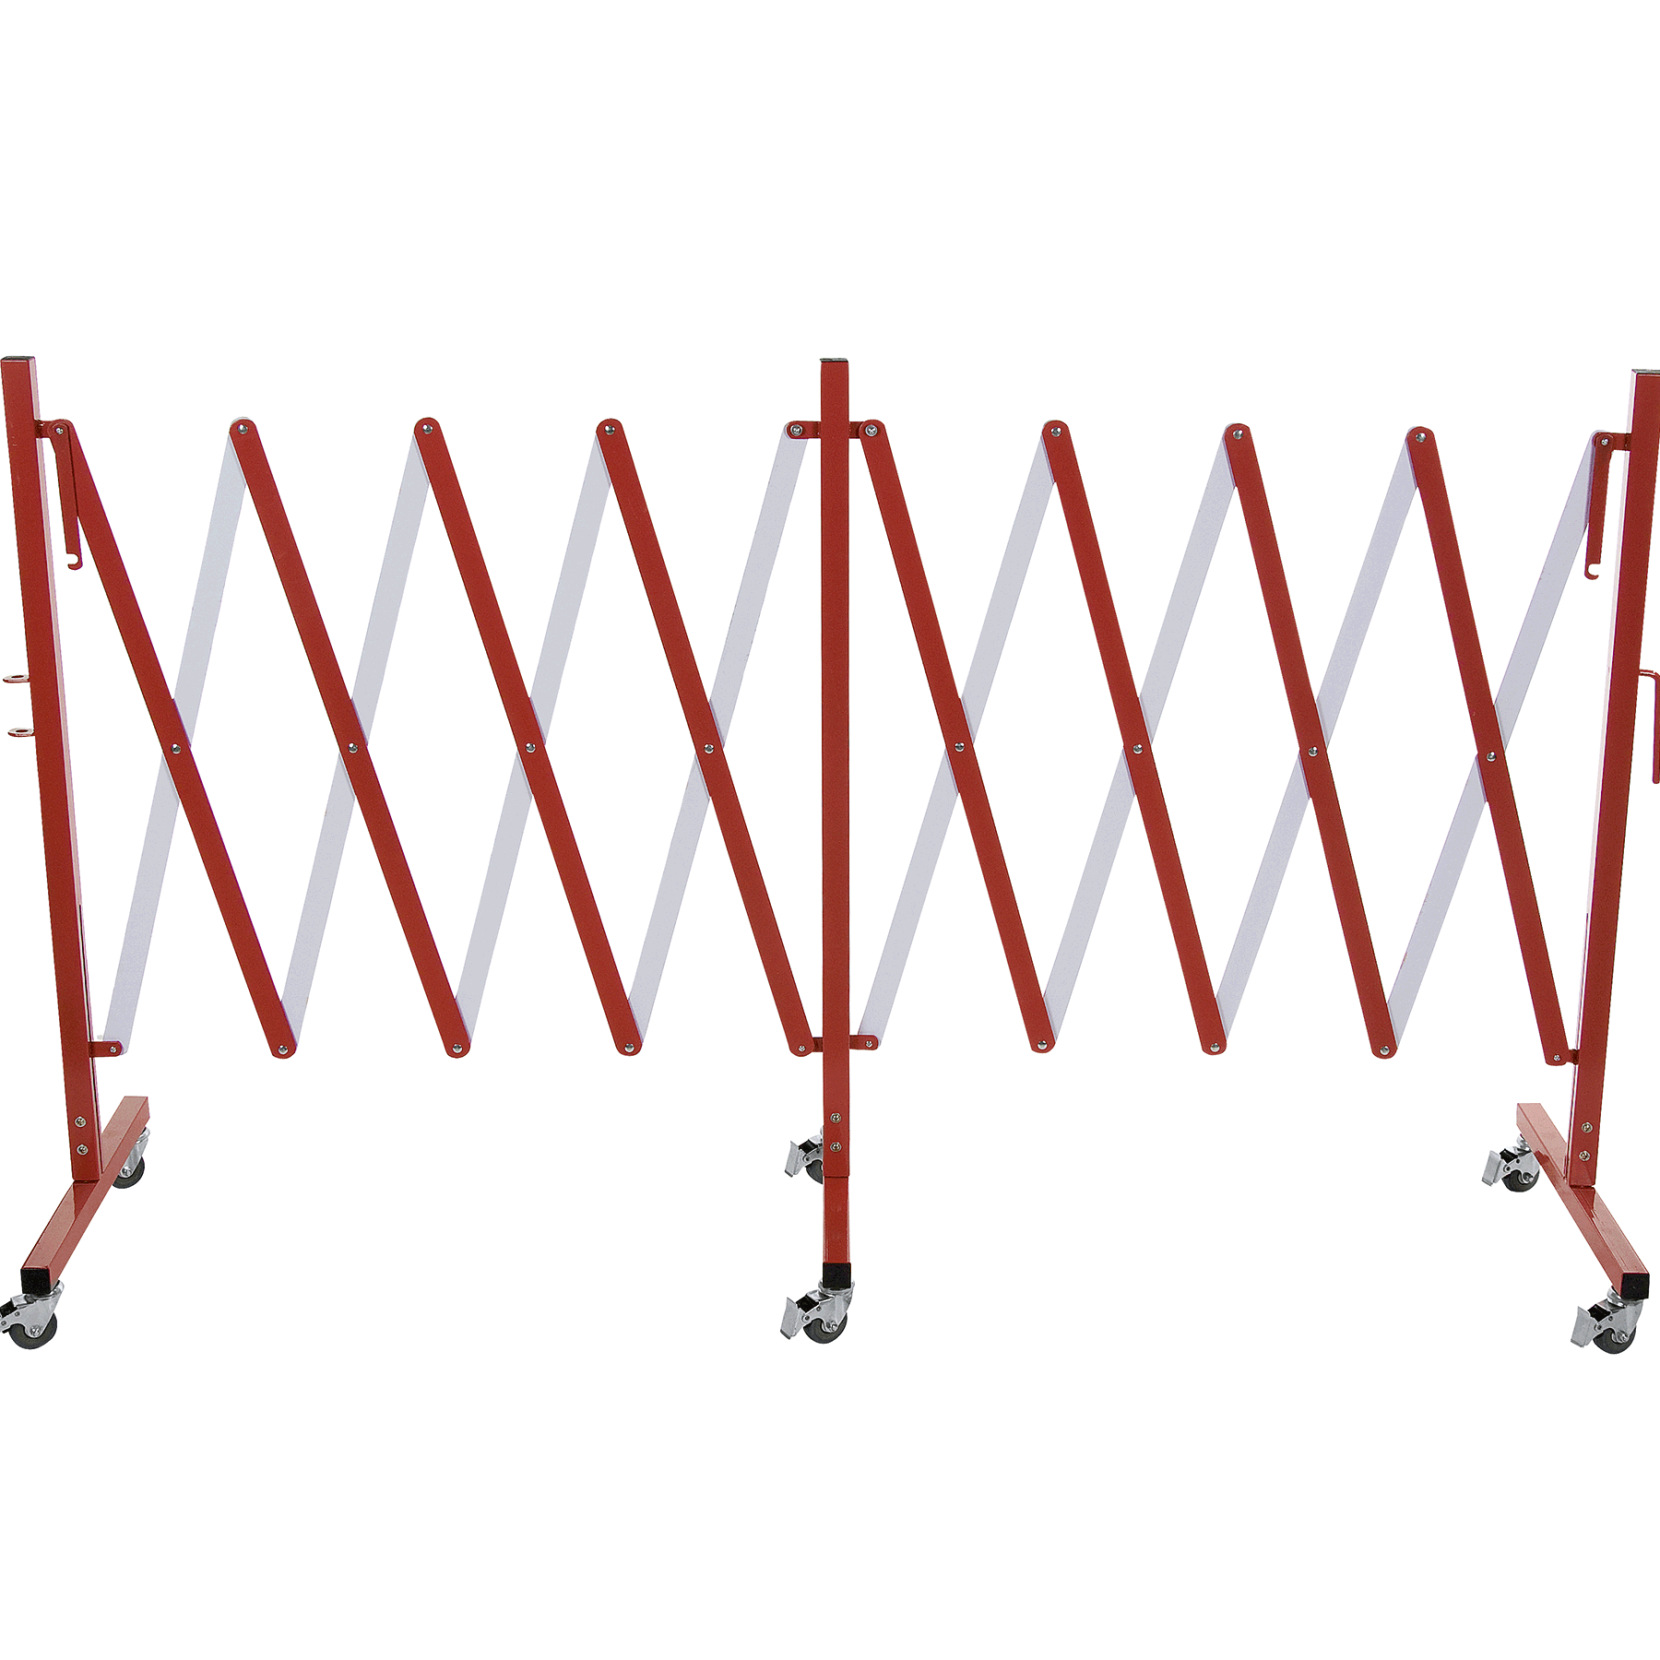 Scherensperre mit sechs Rollen, 4 m, rot & weiß, Aluminium